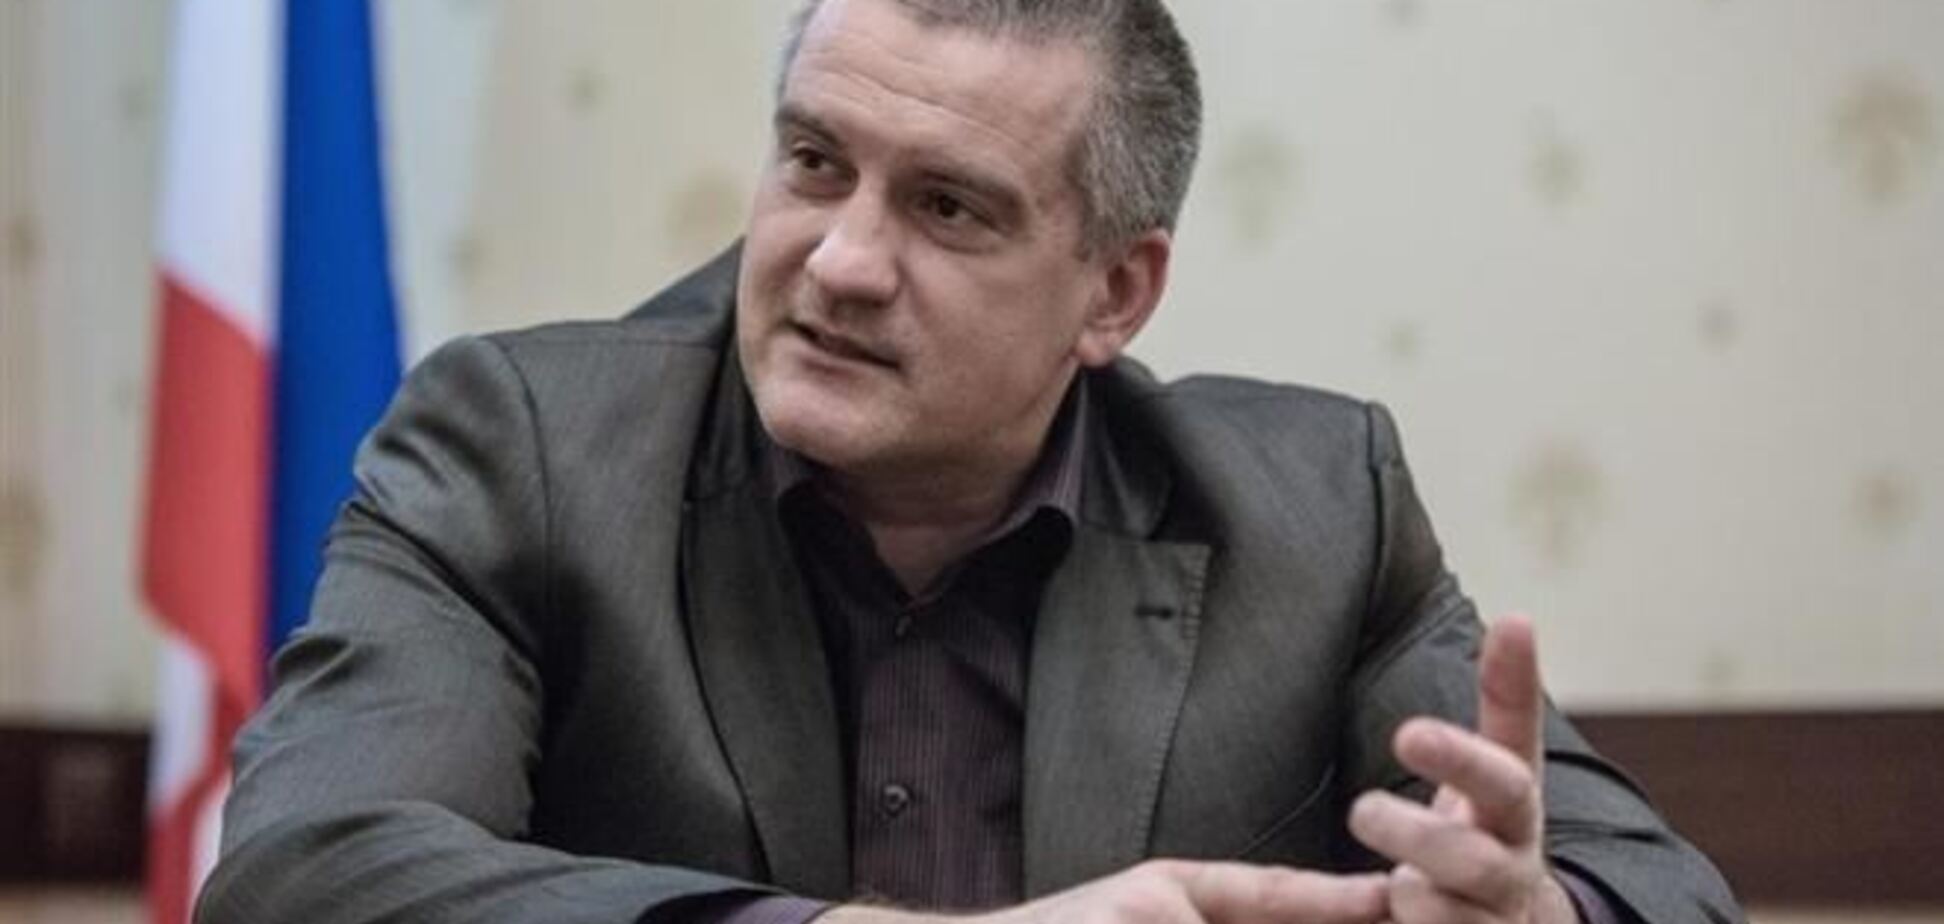 Аксьонов стверджує, що йому пропонували посаду віце-прем'єра України